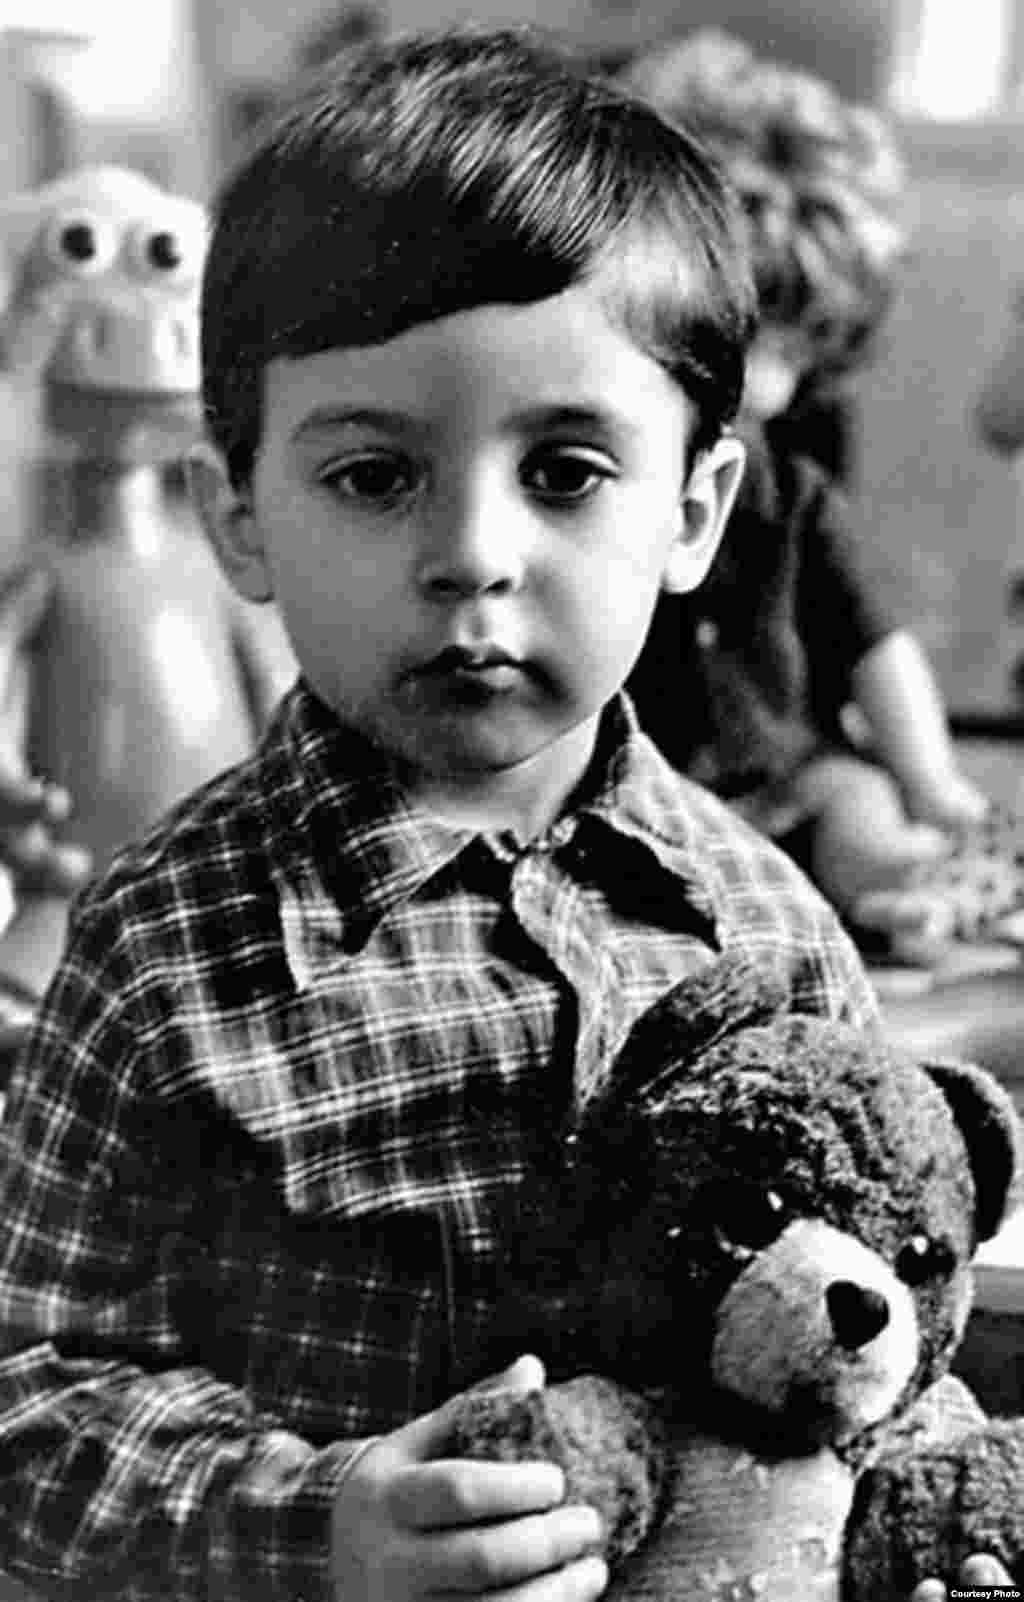 Цей серйозний хлопчик &ndash; нинішній президент України Володимир Зеленський. Фото зроблене наприкінці 1970-х або на початку 1980-х років